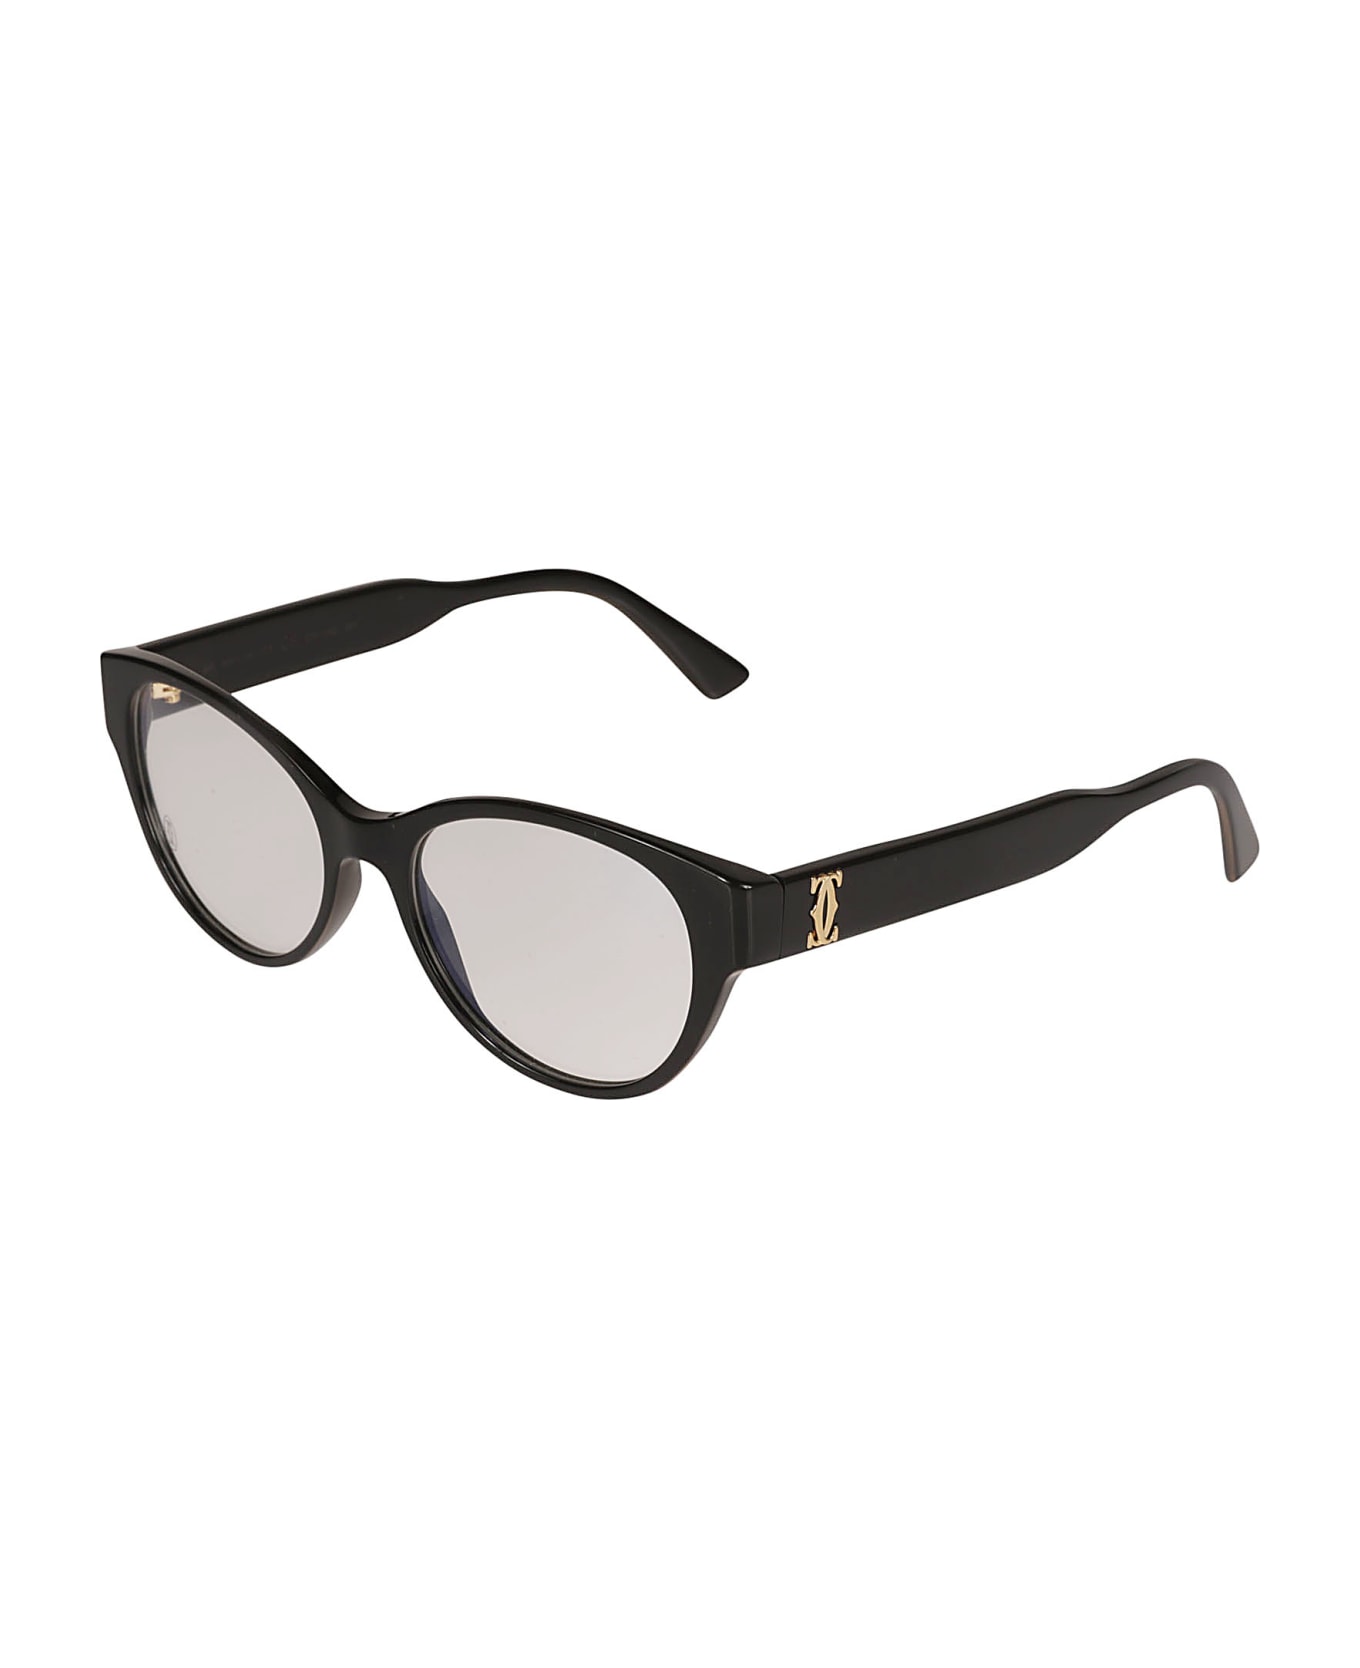 Cartier Eyewear Signature Double C Detail Glasses - 001 black black transpare